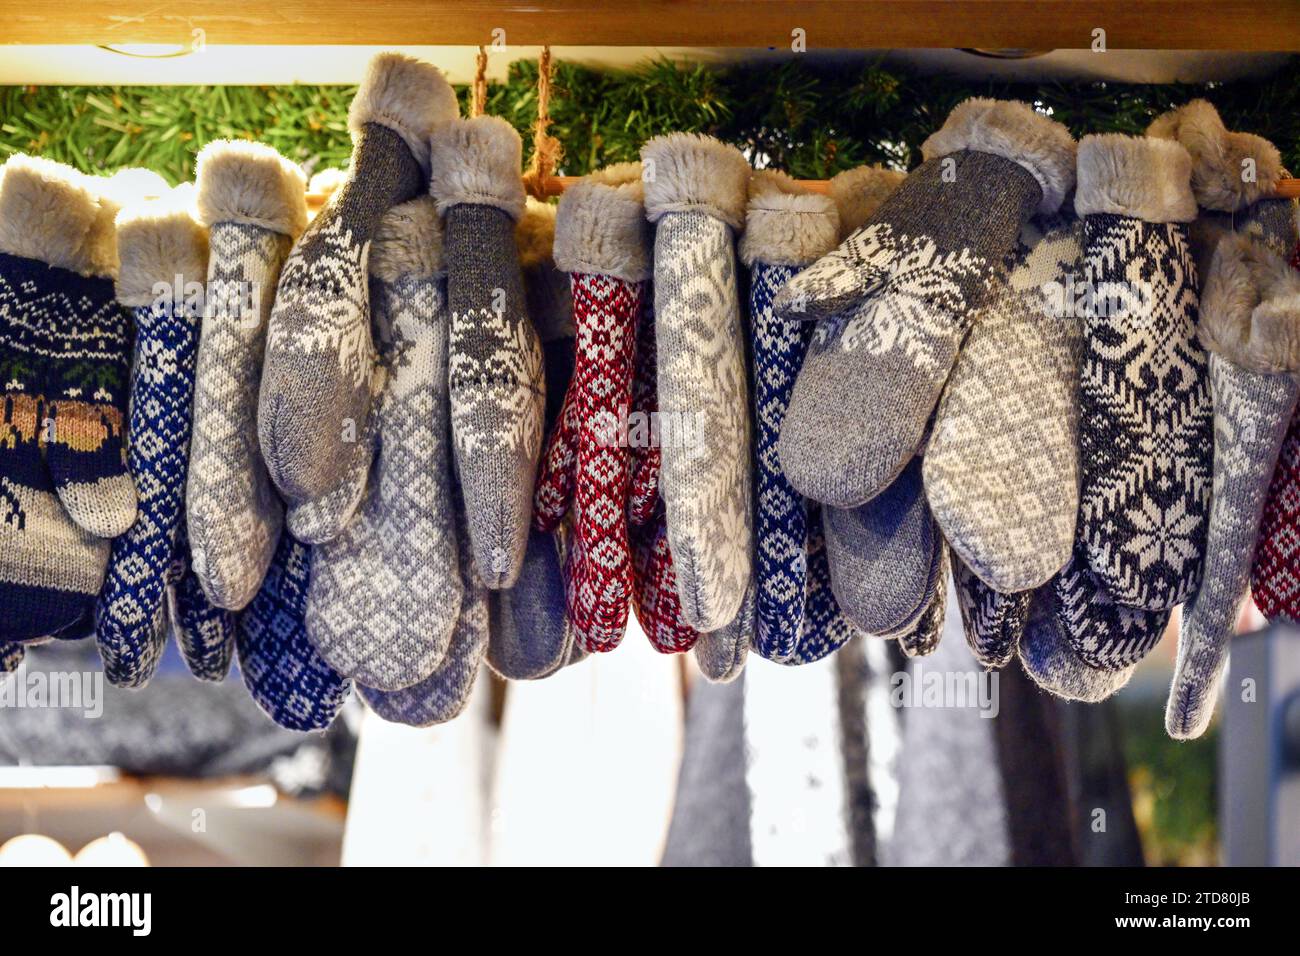 Strickhandschuhe aus Wolle, mit Kunstfell gefüttert, hängend an einem Verkaufsstand auf dem Weihnachtsmarkt, Handschuhe für warme Hände im Winter, Kopierraum, ausgewählt f Stockfoto